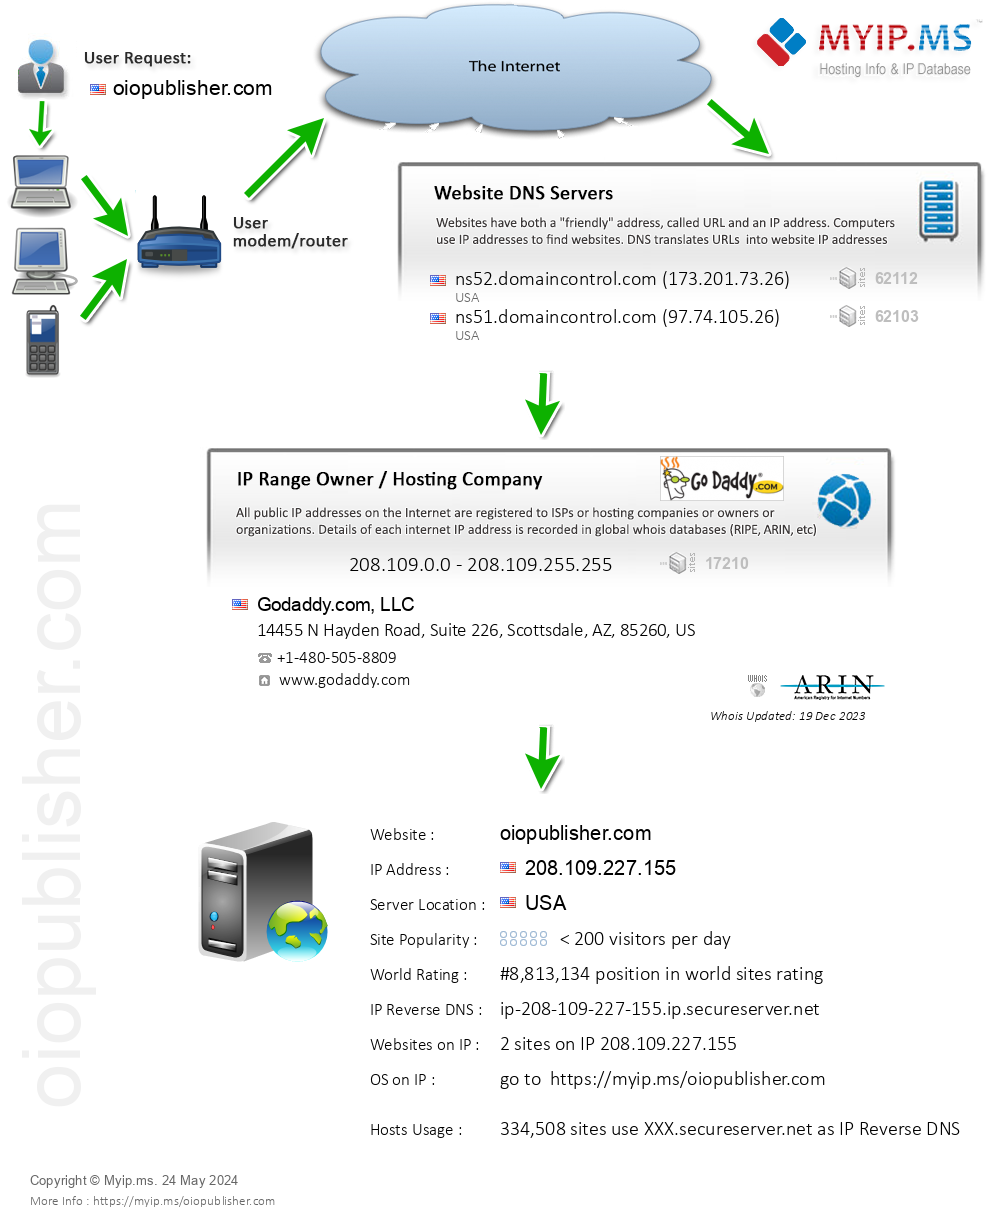 Oiopublisher.com - Website Hosting Visual IP Diagram